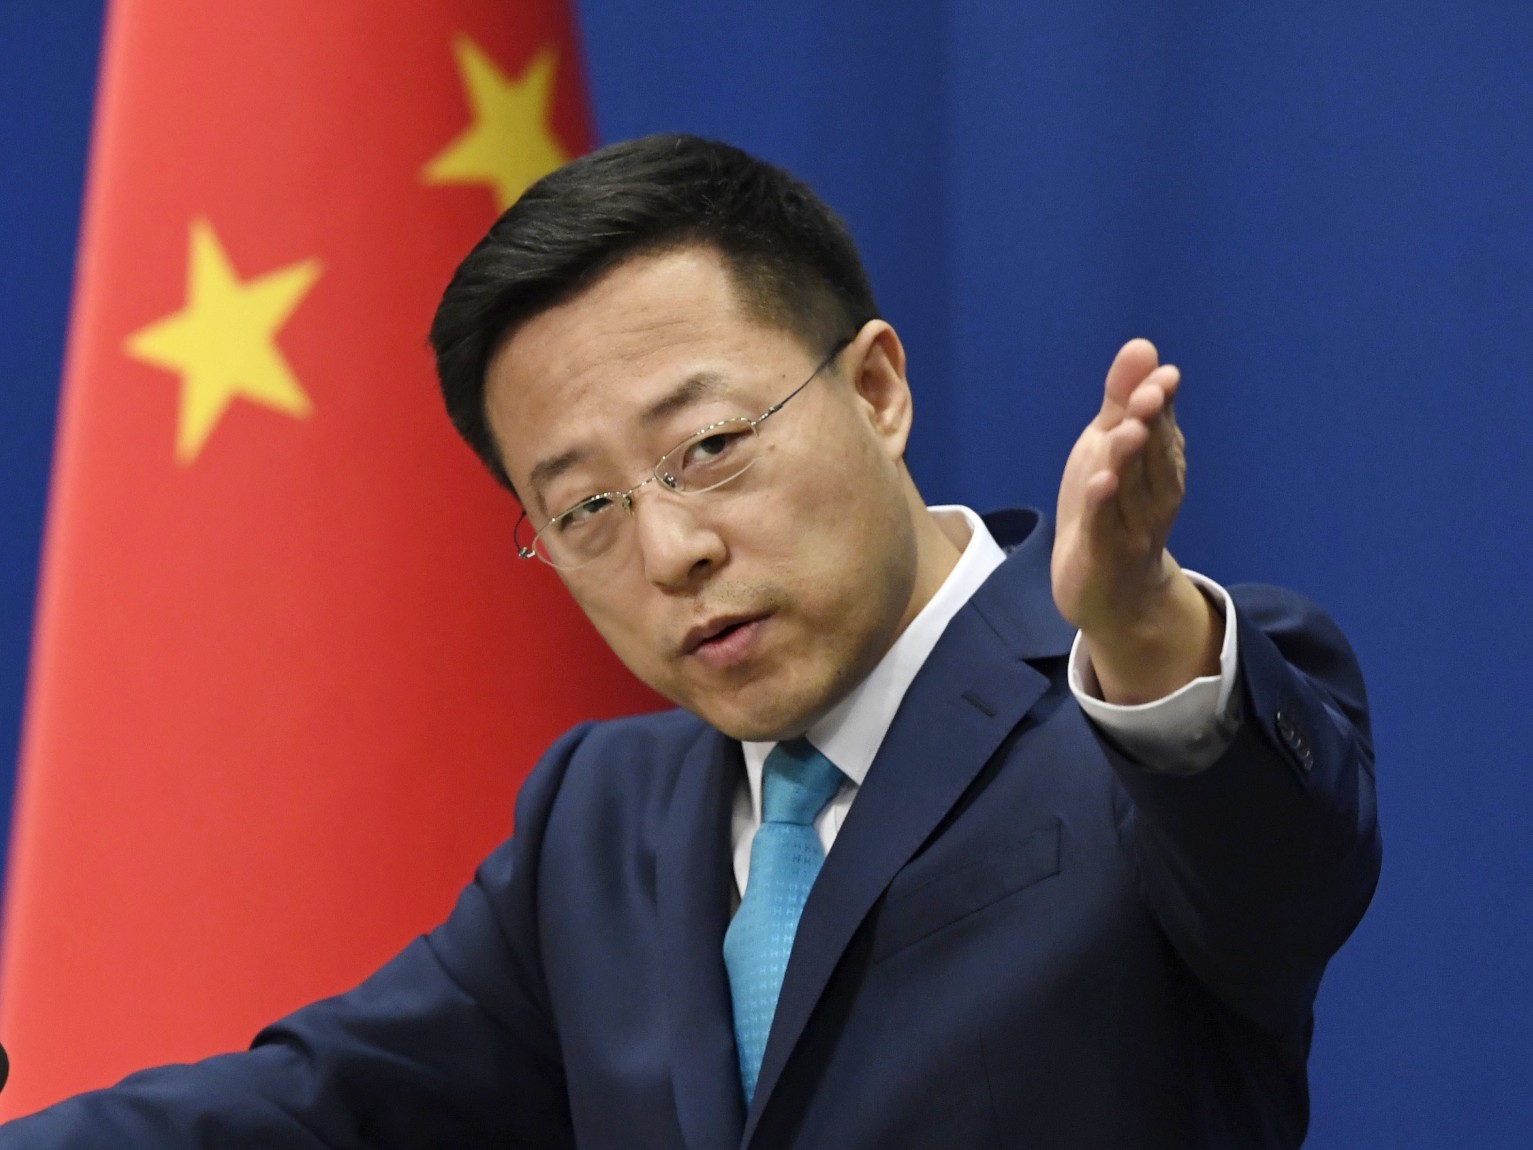 Trung Quốc khẳng định không có sự che đậy thông tin về dịch Covid-19 (ảnh: Reuters)